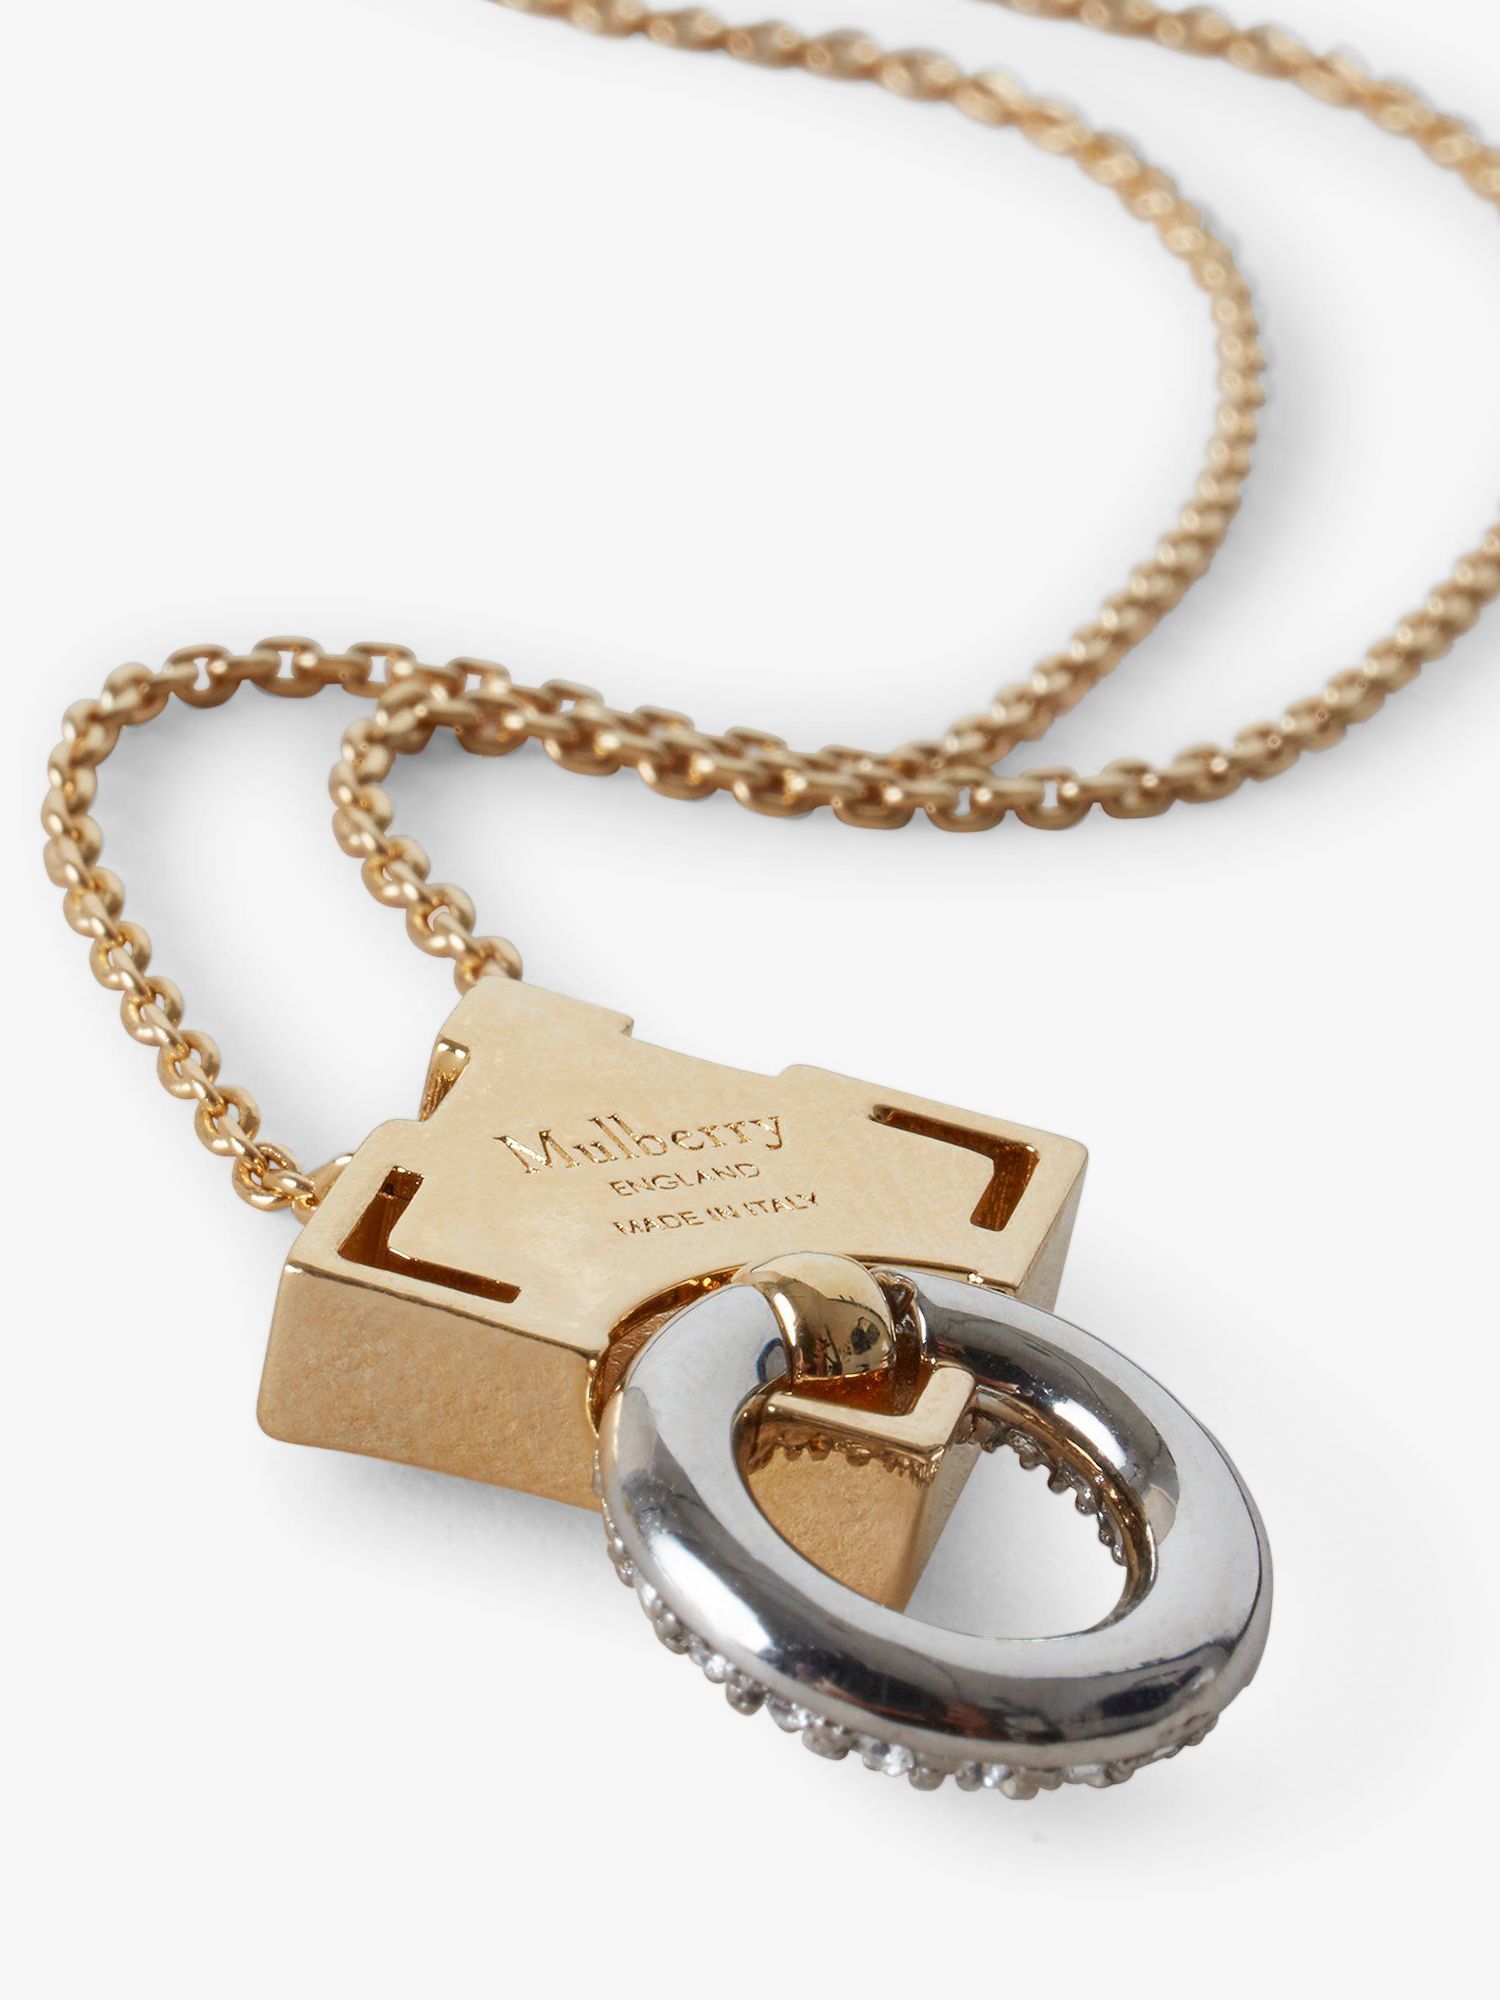 Louis Vuitton Float Your Boat Pendant Necklace - Brass Pendant